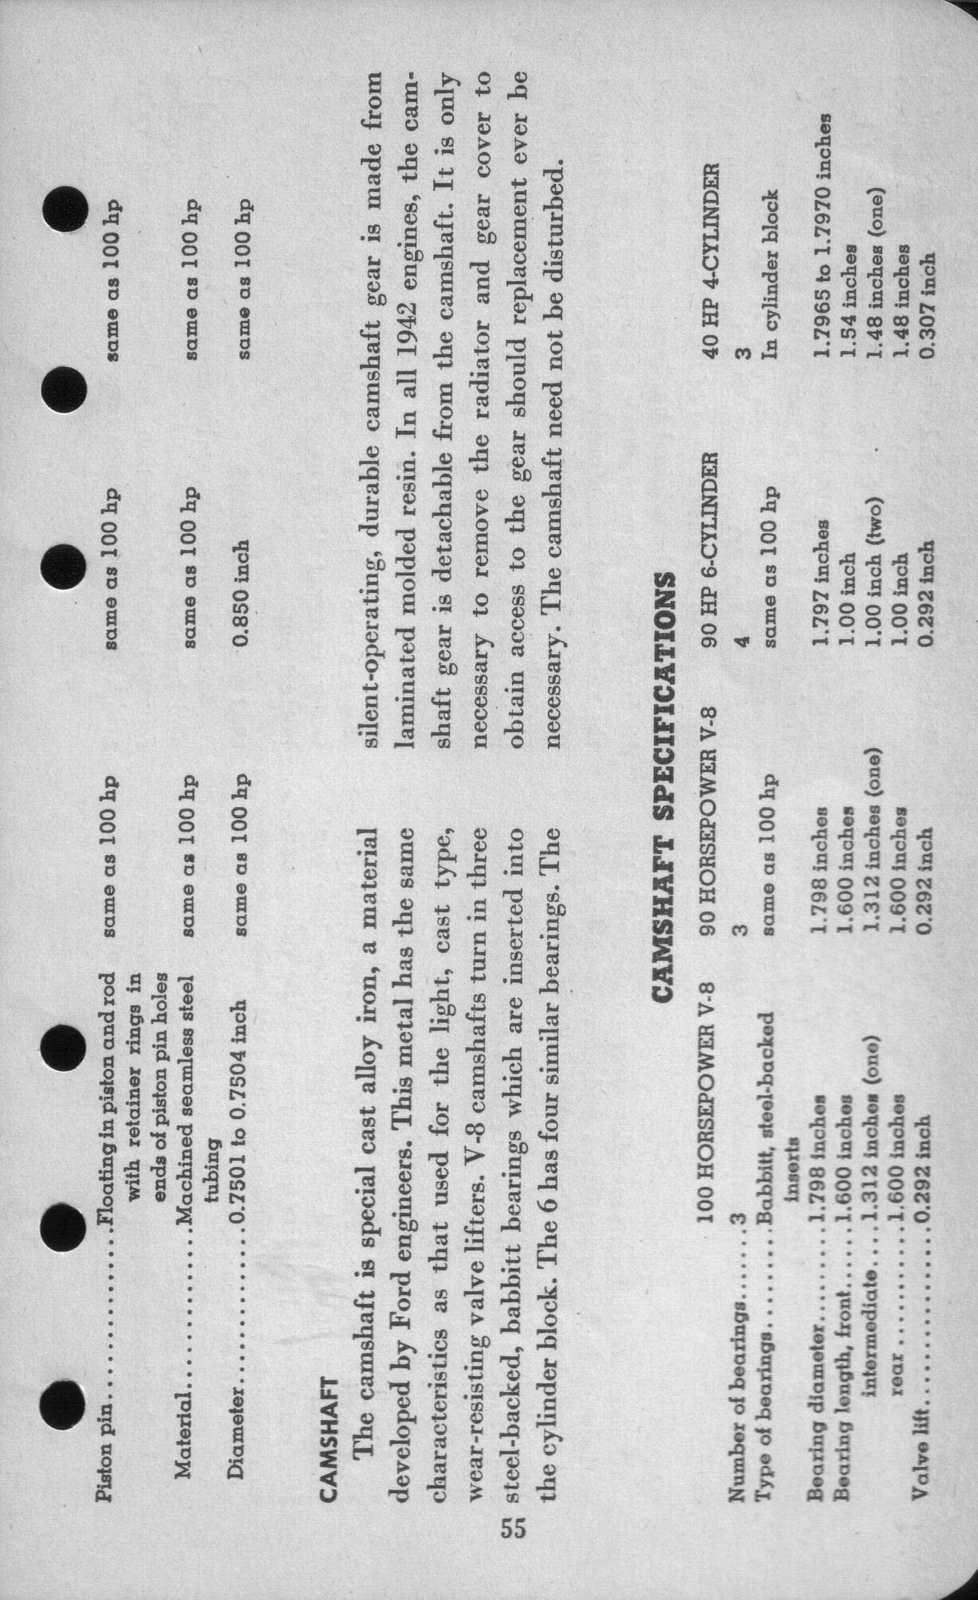 n_1942 Ford Salesmans Reference Manual-055.jpg